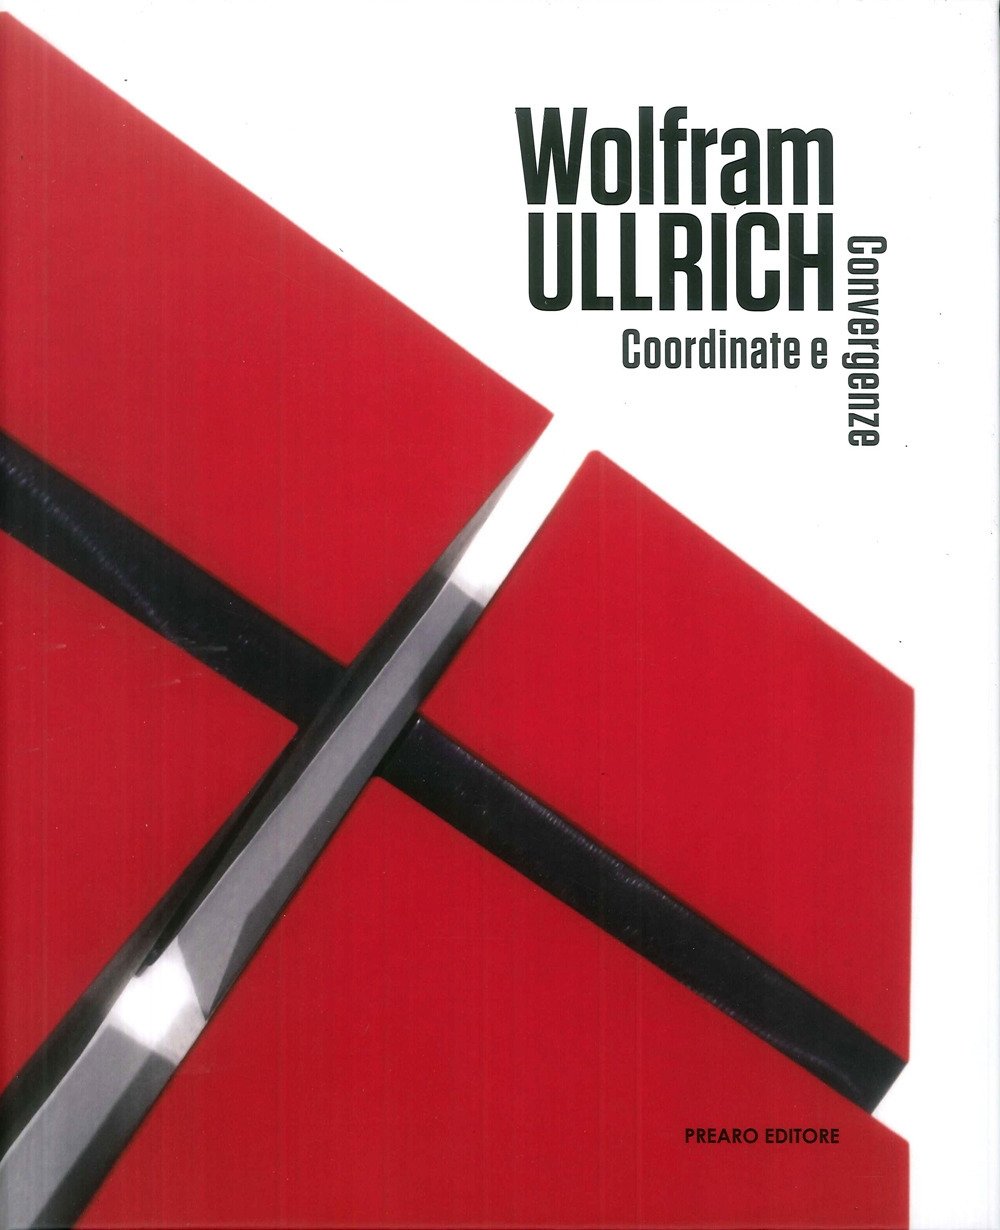 Wolfram ullrich. Coordinate e convergenze, Milano, Prearo Editore, 2019